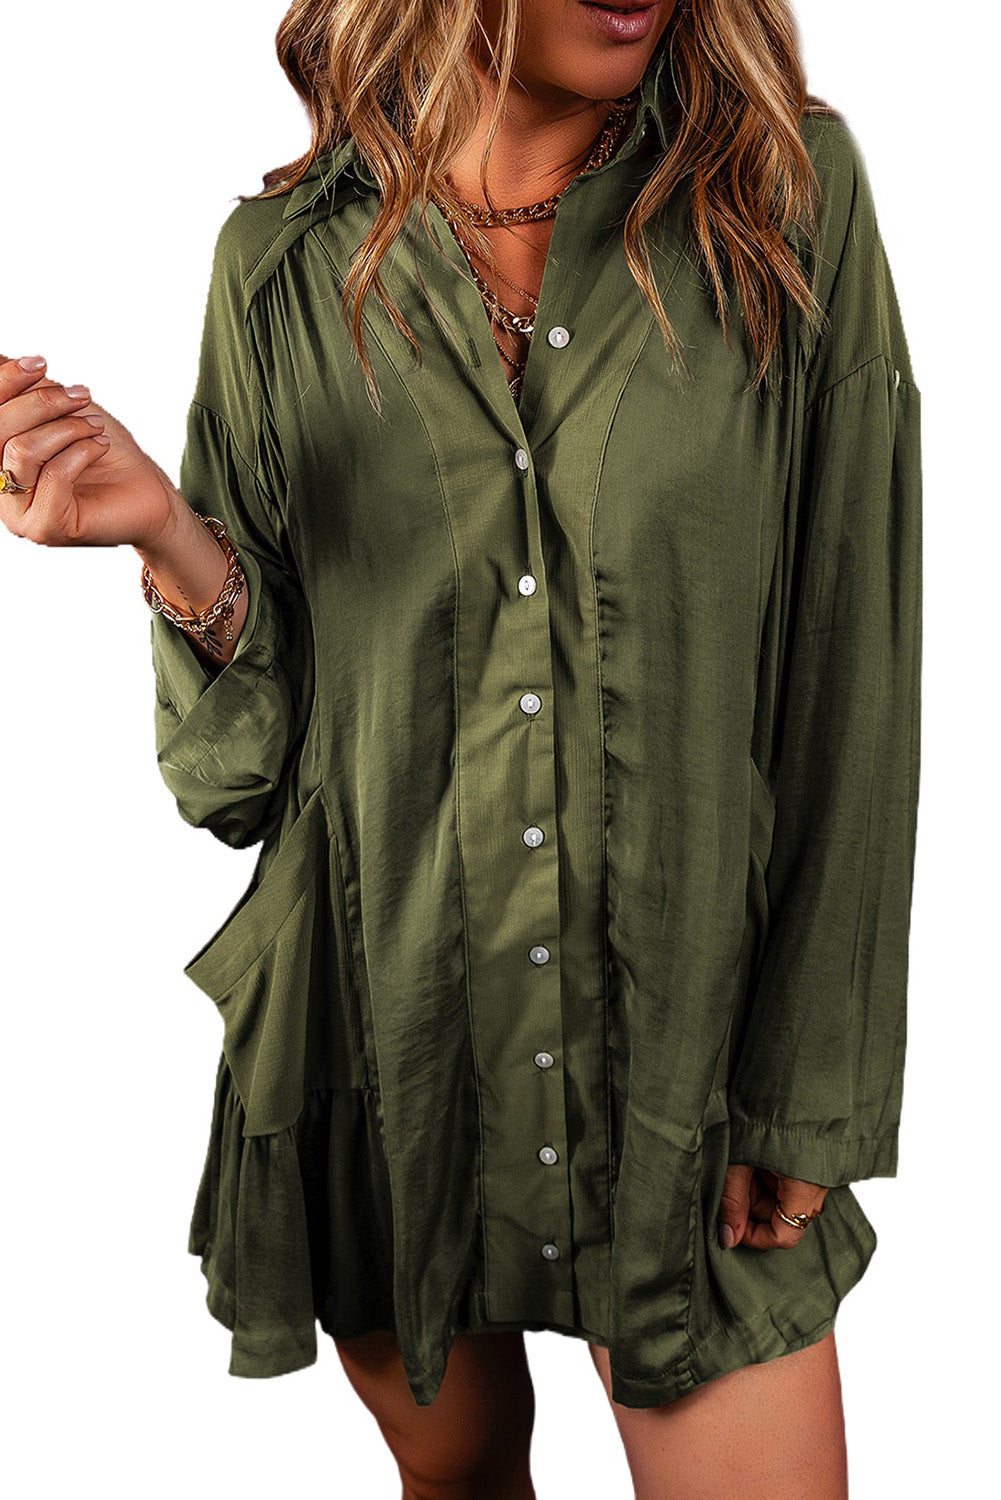 Pickle Green široka haljina košulja s džepovima i naboranim rubom